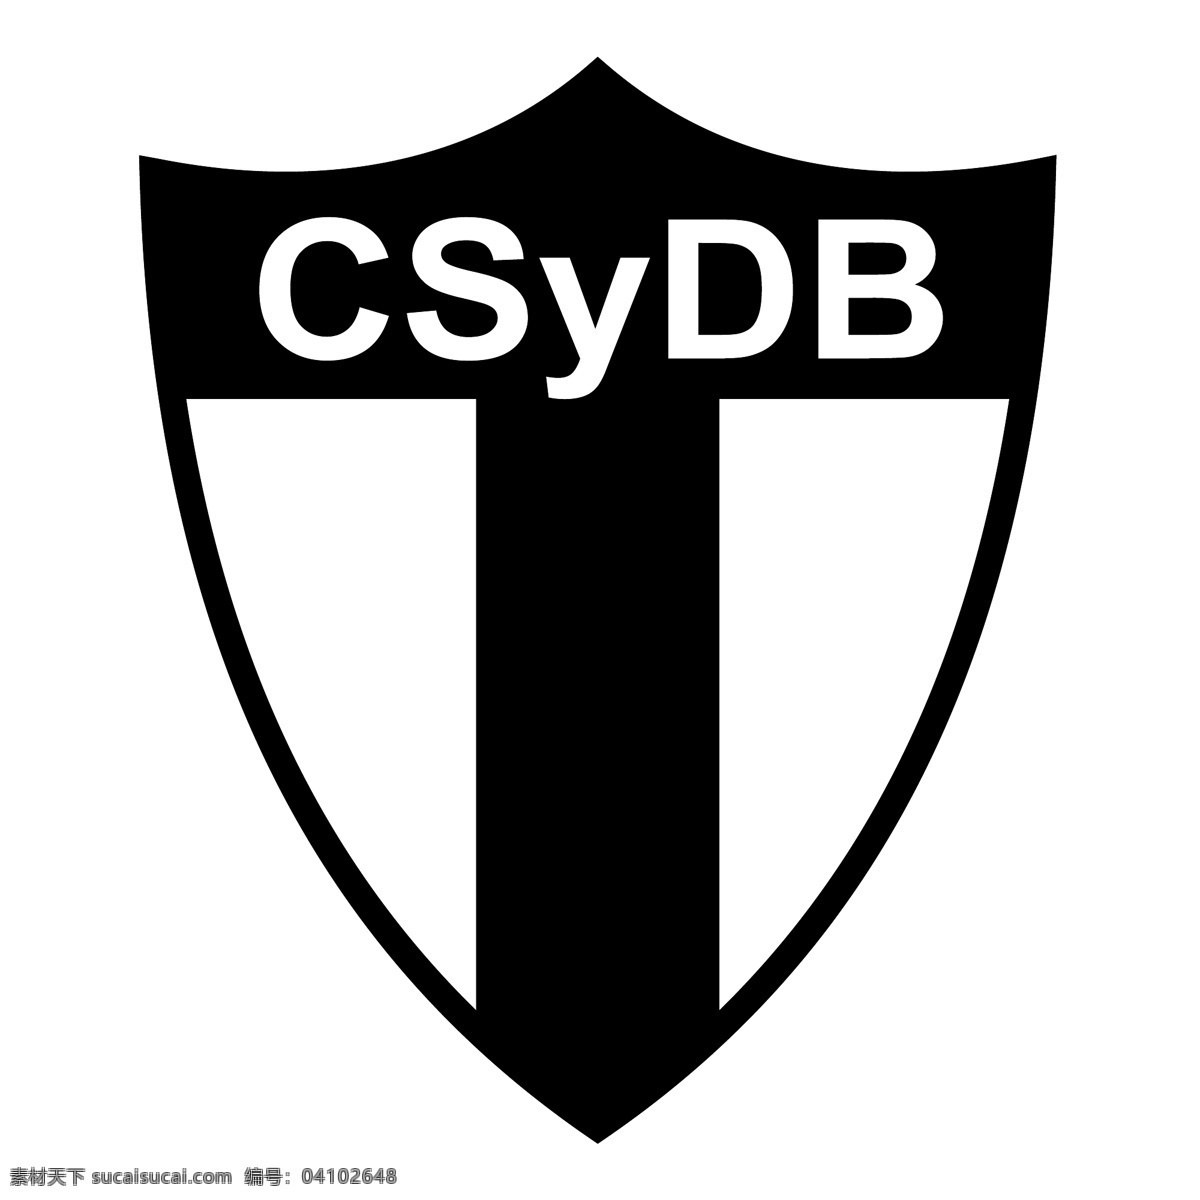 俱乐部 社会 y 拉科 鲁尼亚 圣尼古拉斯 大道 自由 标志 免费 psd源文件 logo设计